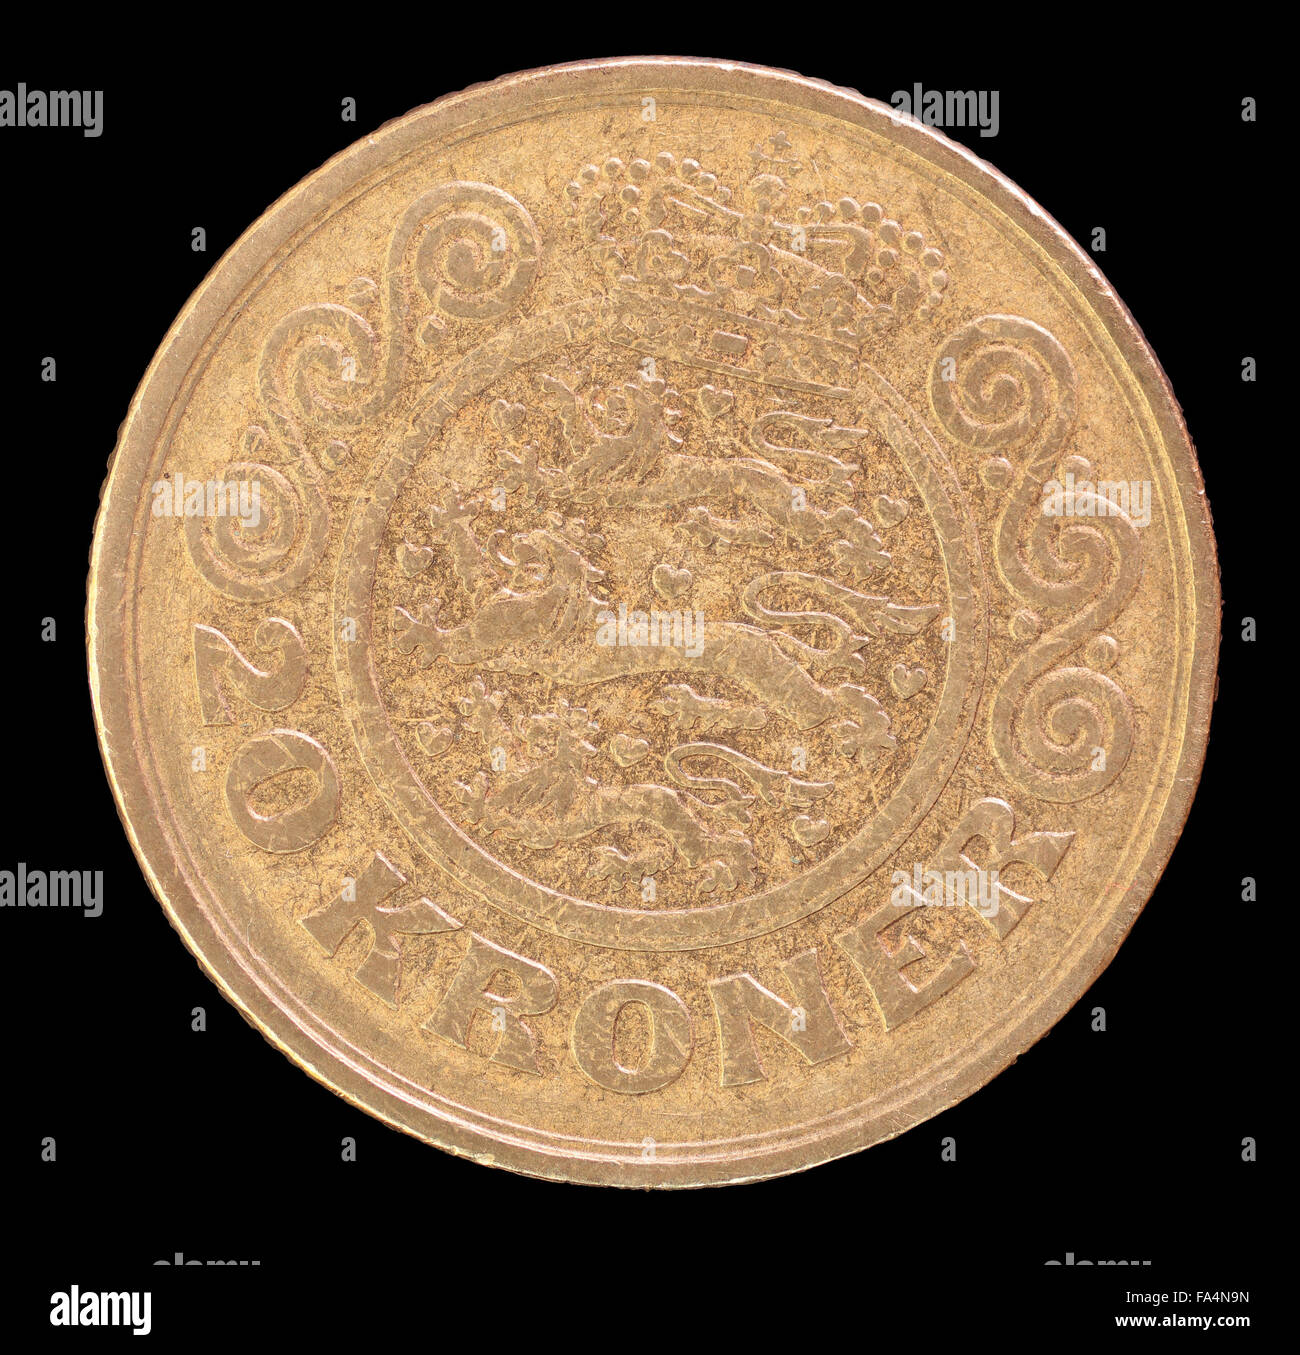 La faccia di coda di 20 krone coin, rilasciati dalla Danimarca nel 1991, raffigurante lo stemma nazionale. Immagine isolata su backgrou nero Foto Stock